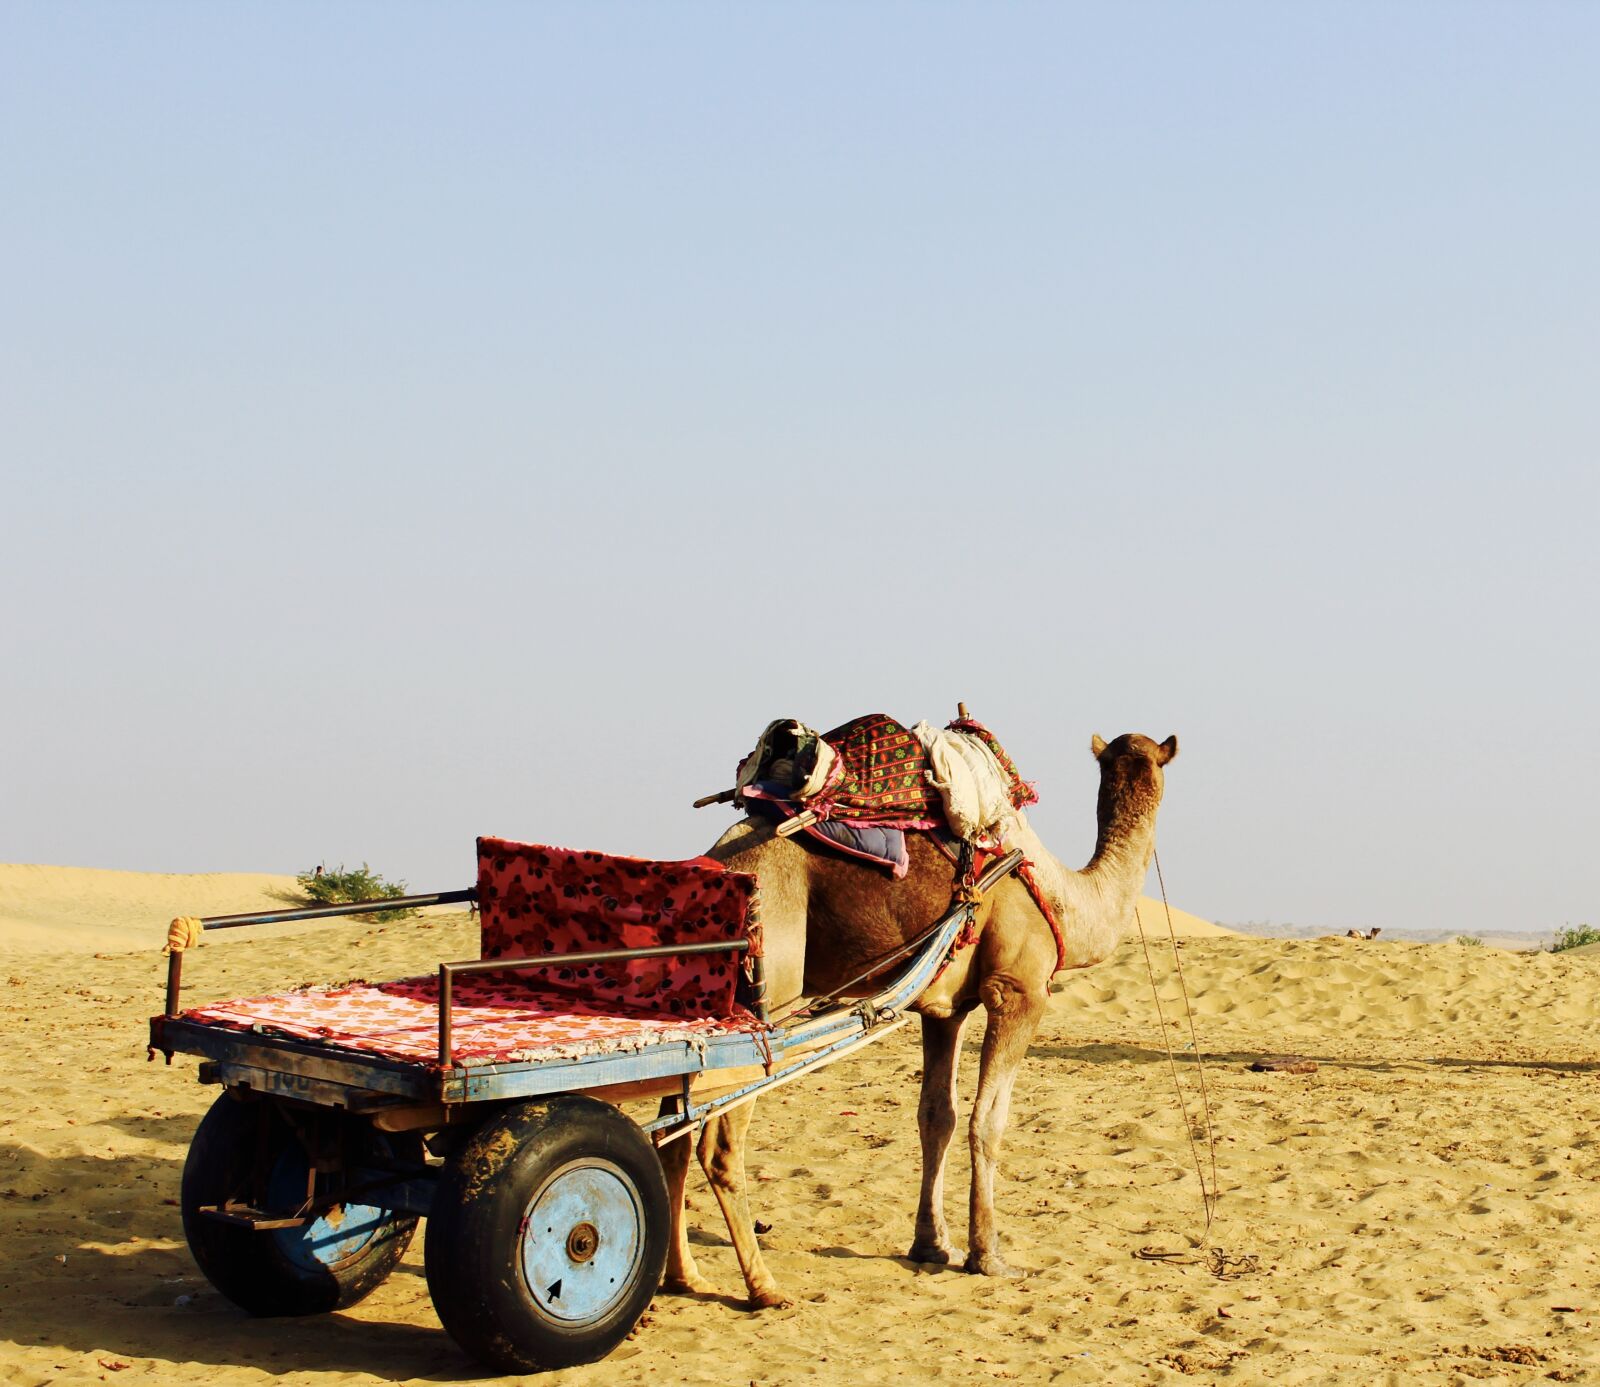 Canon EOS 1200D (EOS Rebel T5 / EOS Kiss X70 / EOS Hi) sample photo. Camel, desert, horizon, india photography